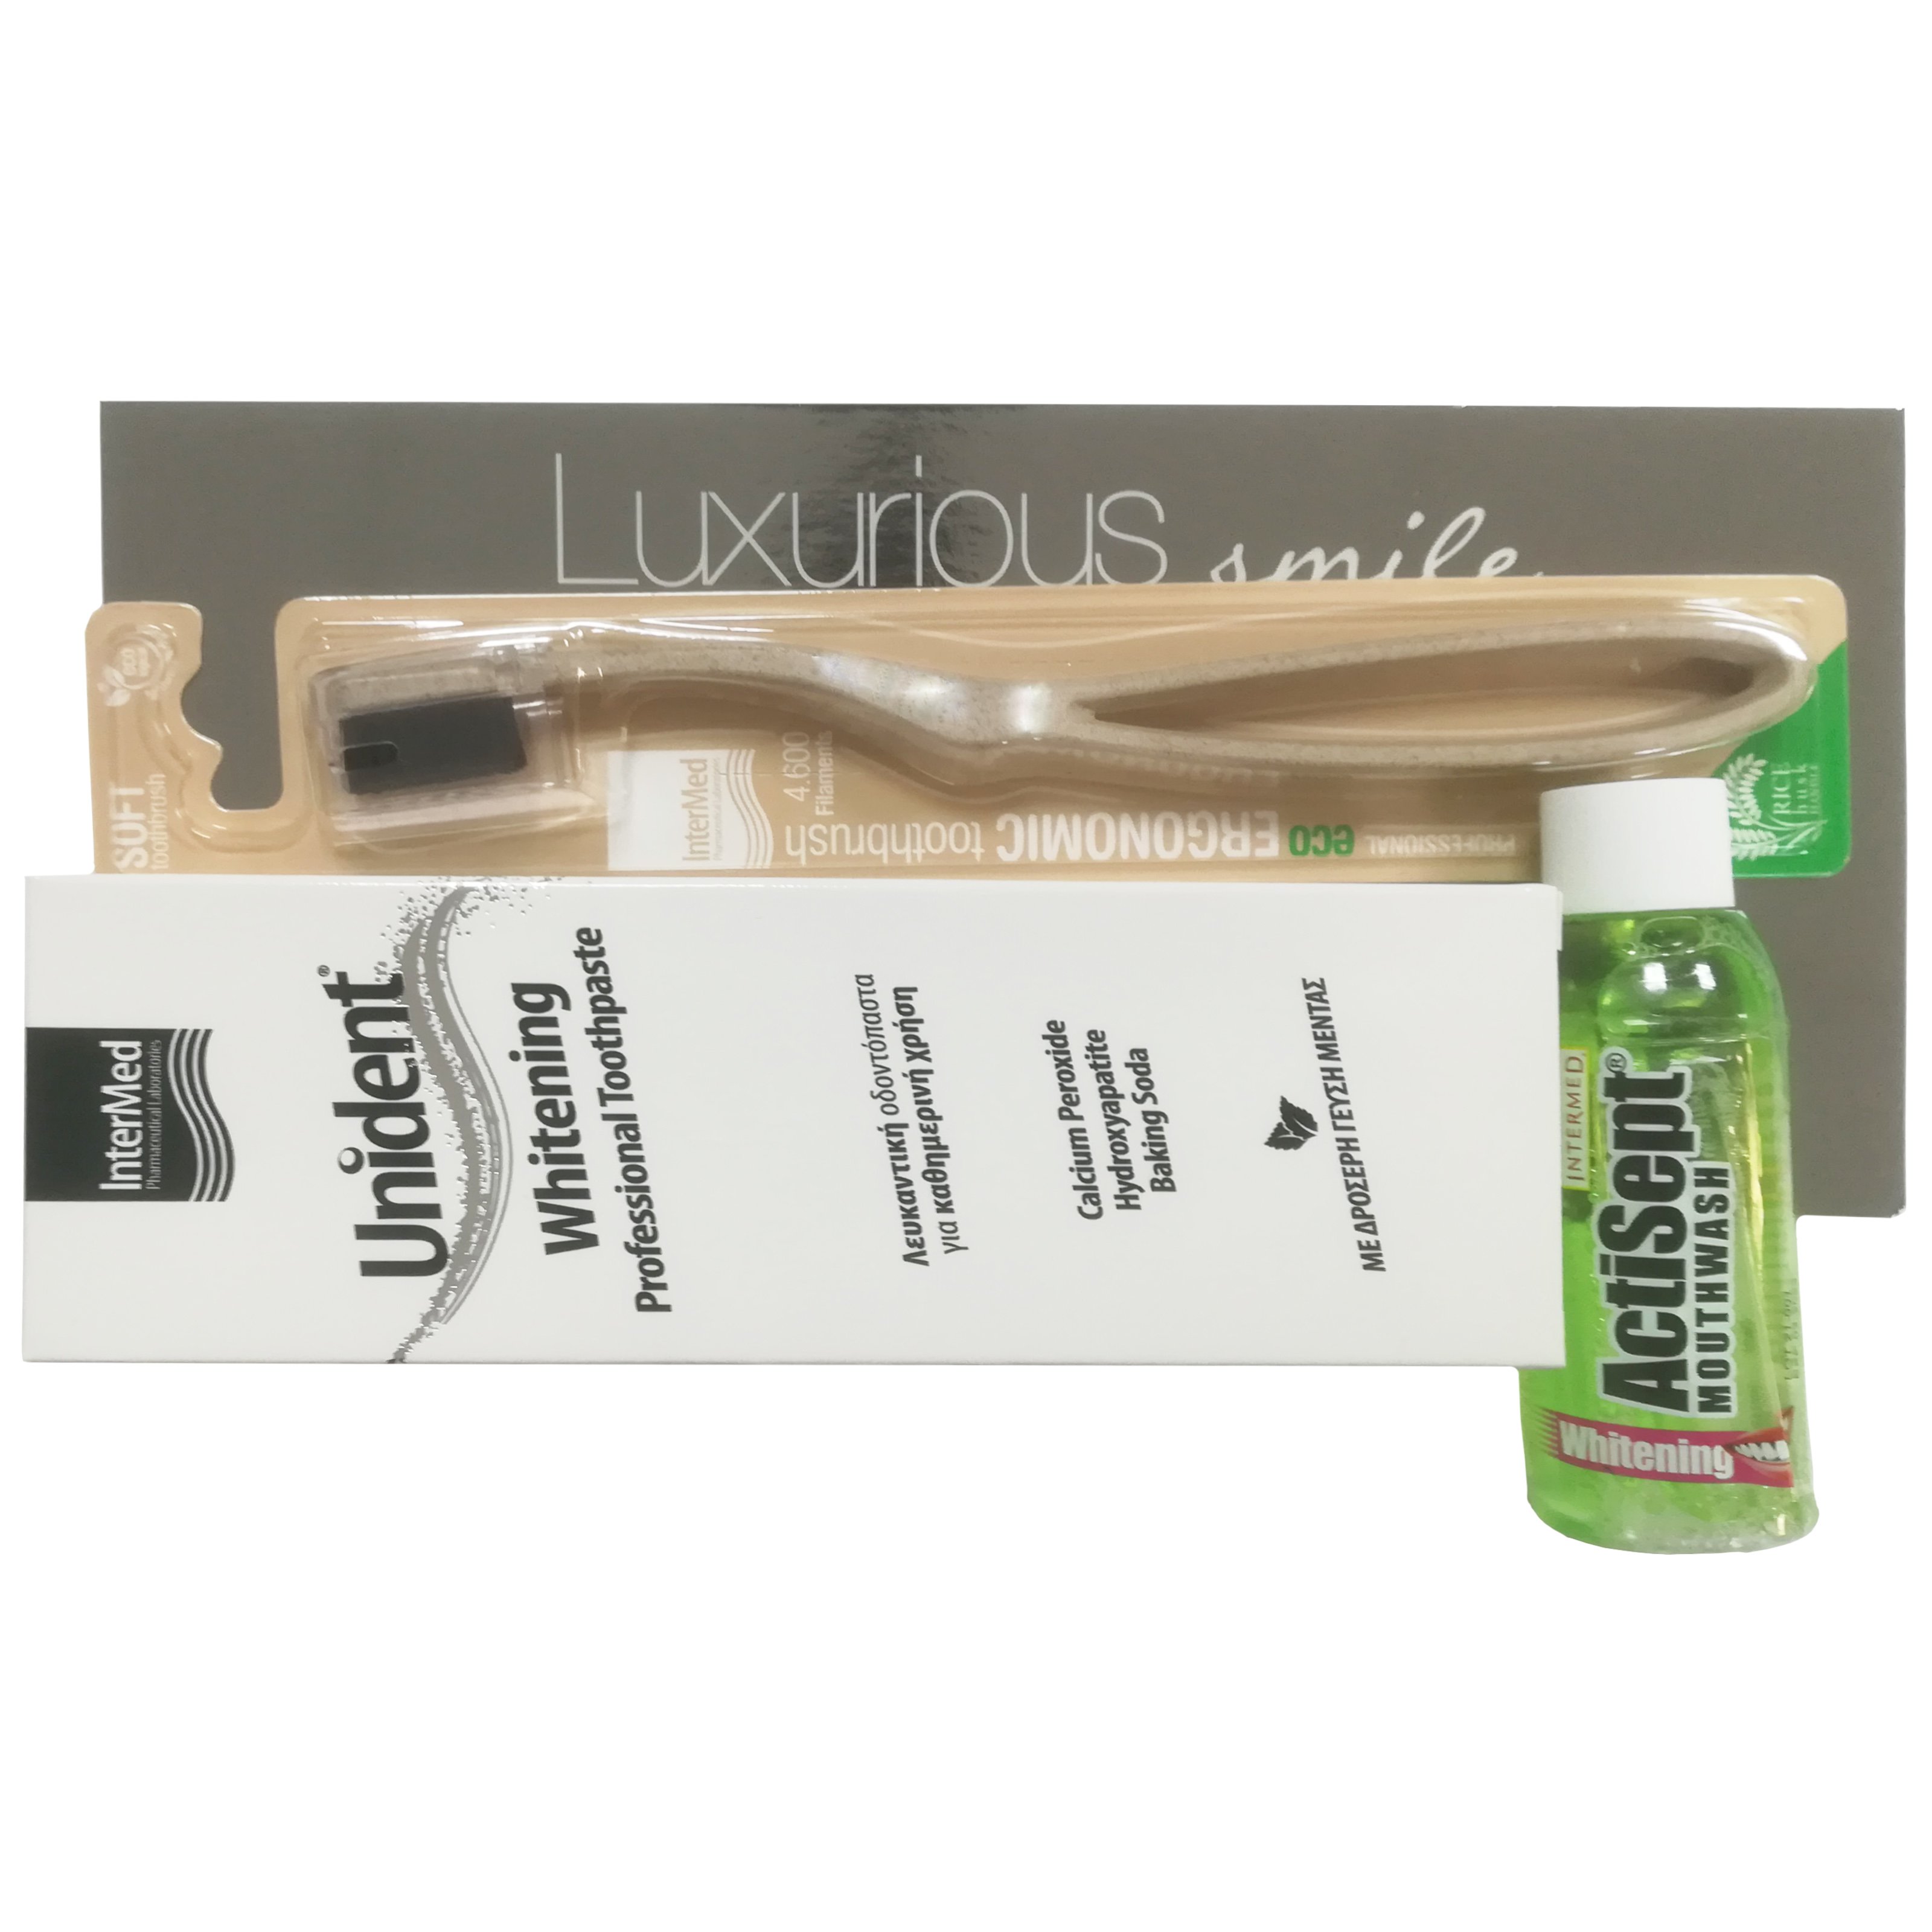 Intermed Promo Luxurious Smile Kit Unident Whitening Toothpaste 100ml, Actisept Whitening Mouthwash 60ml, Eco Ergonomic Soft Toothbrush 1 Τεμάχιο & Δώρο Νεσεσέρ